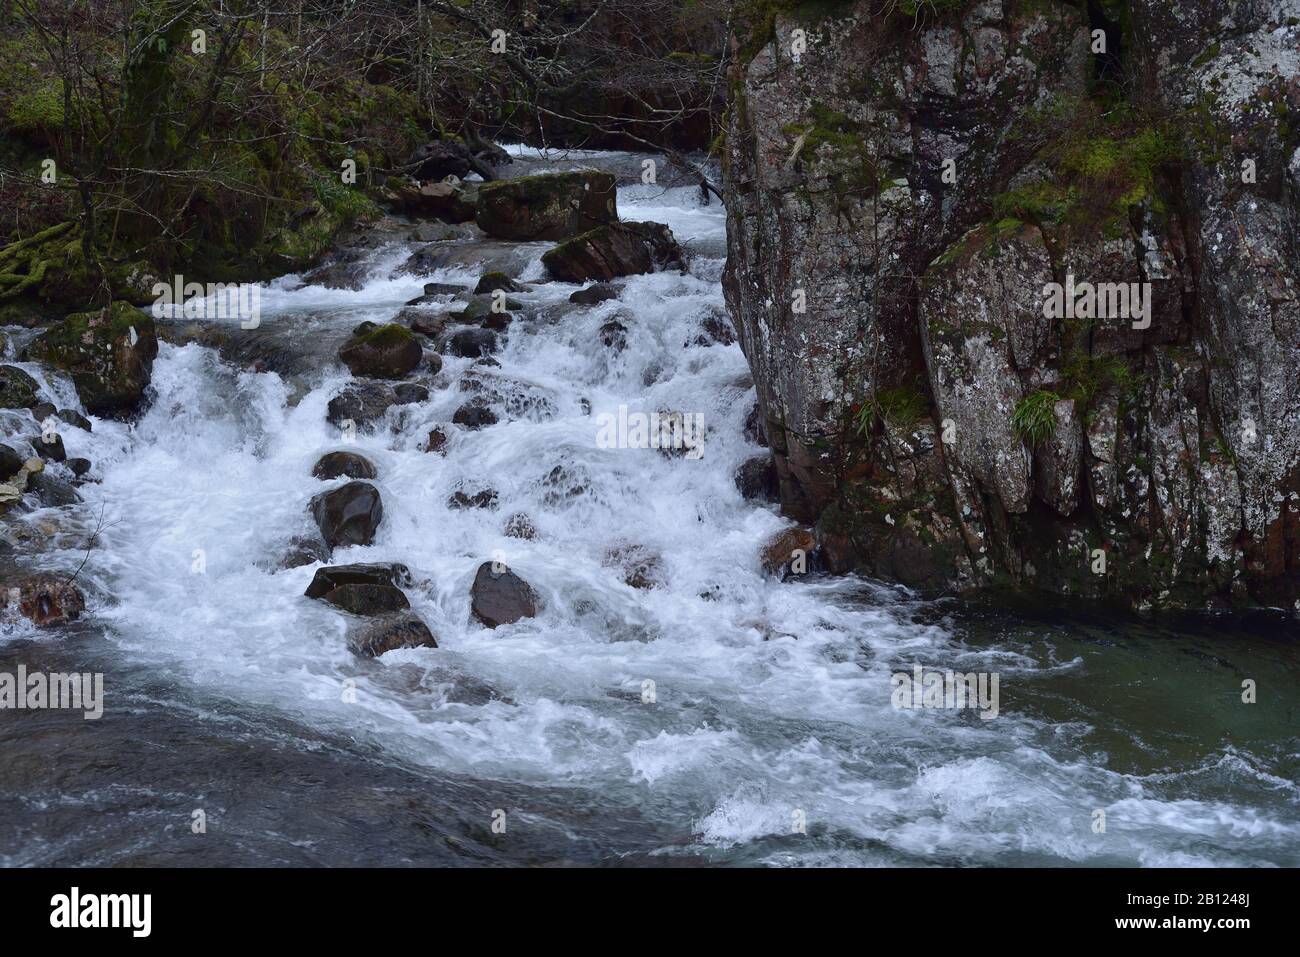 Die Lower Falls, Glen Nevis, in der Nähe von Fort William. Dieser ist ein Zufluss, der sich am Fuße einer niedrigen Klippe mit dem Hauptfluss Nevis verbindet. Stockfoto